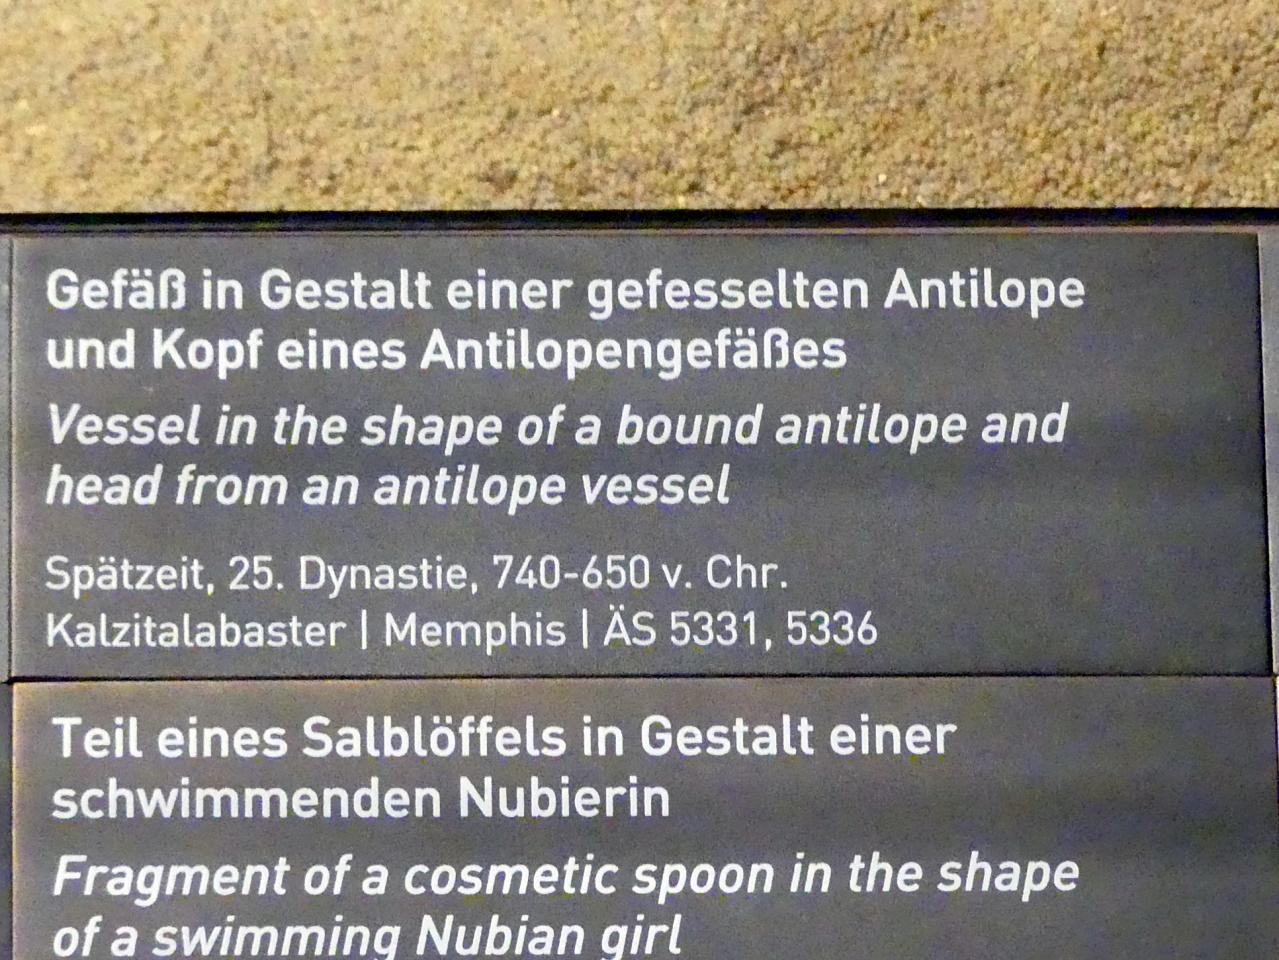 Gefäß in Gestalt einer gefesselten Antilope, 25. Dynastie, 705 - 690 v. Chr., 740 - 650 v. Chr., Bild 2/2